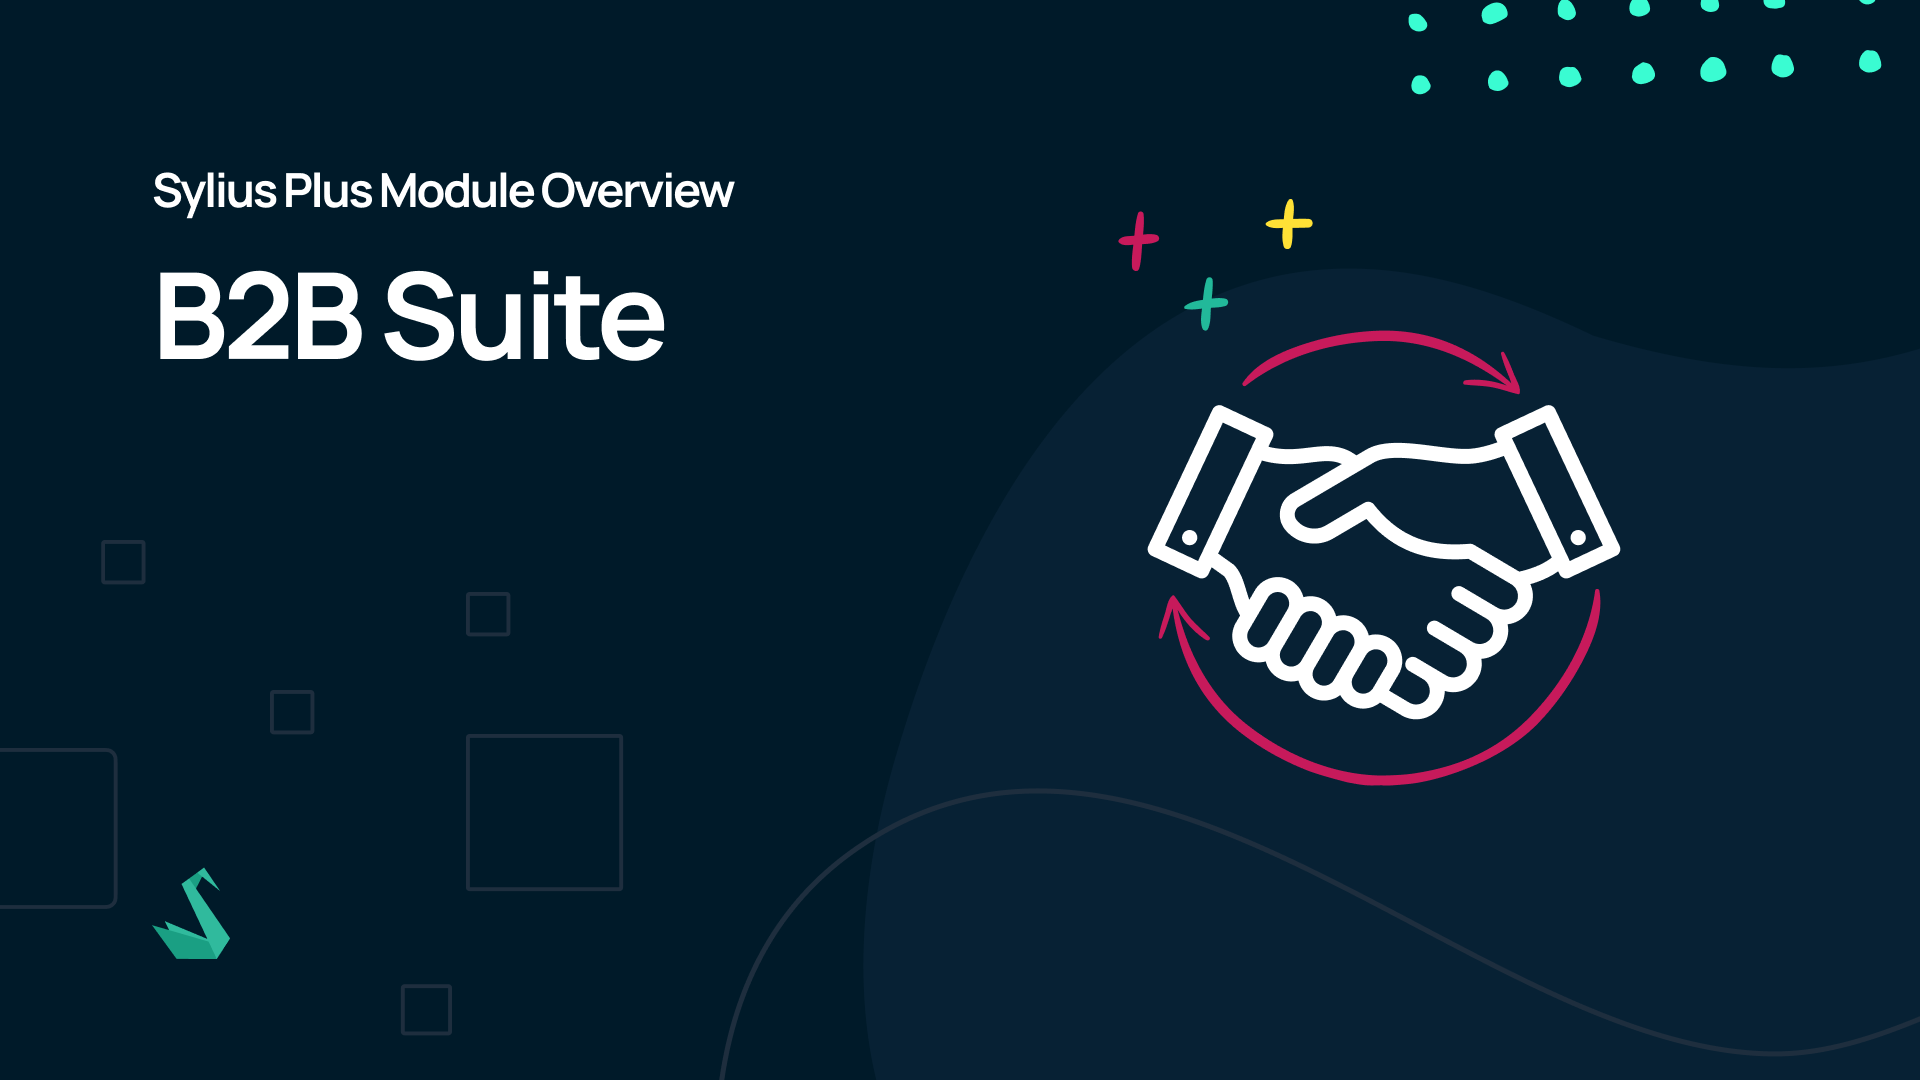 Sylius Plus Module Overview: B2B Suite